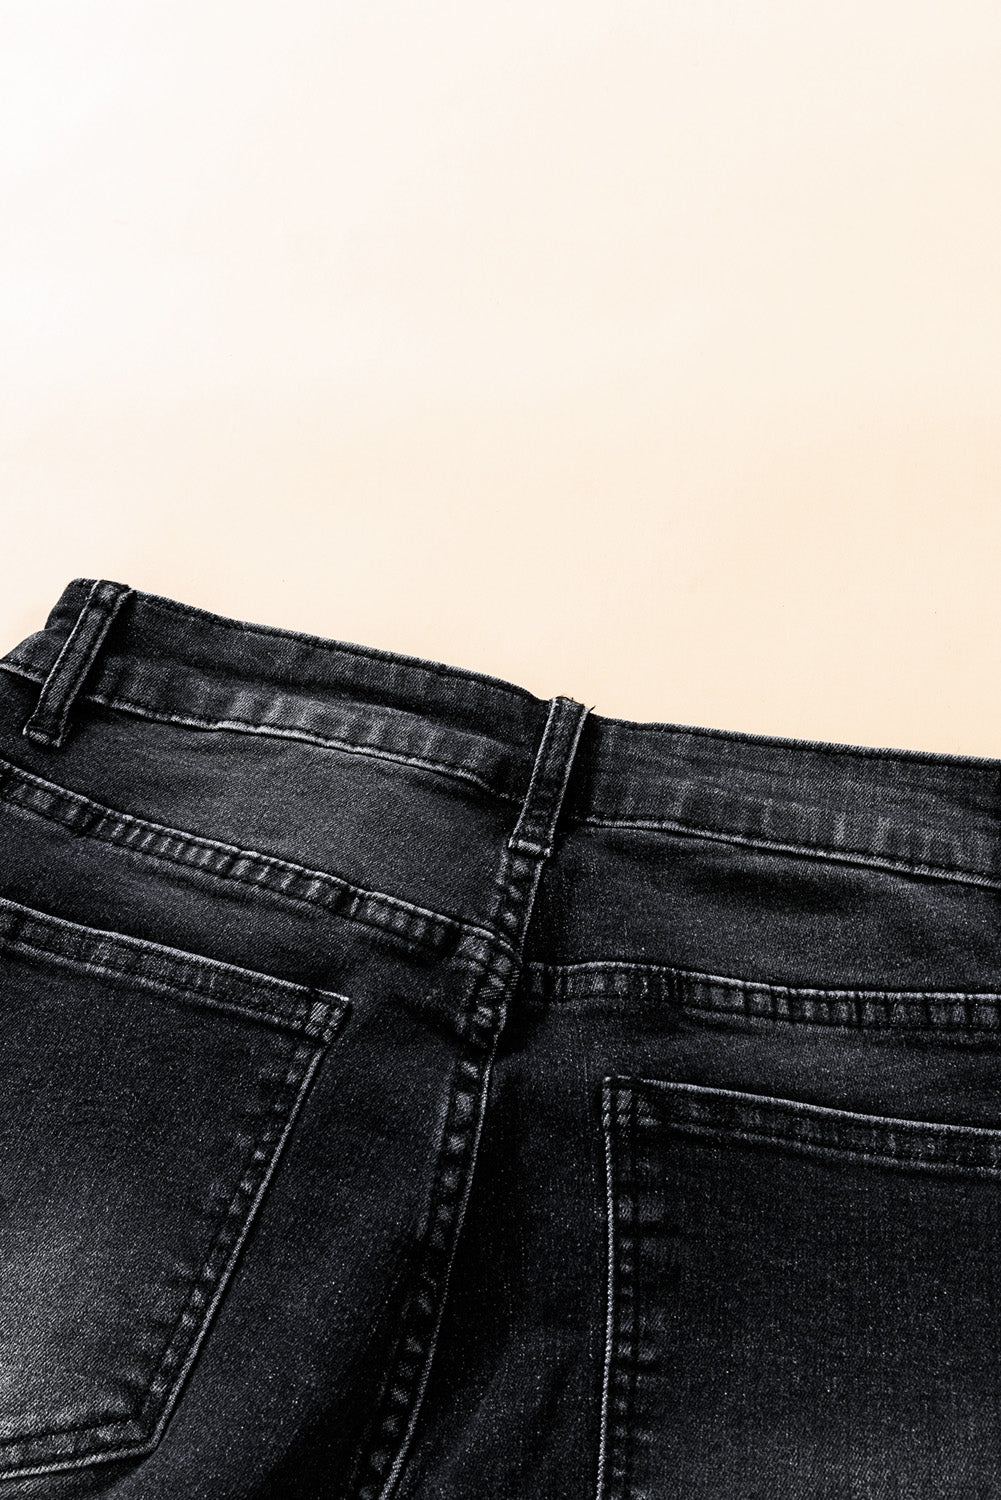 Jeans neri a vita media con bottoni e orlo grezzo invecchiato